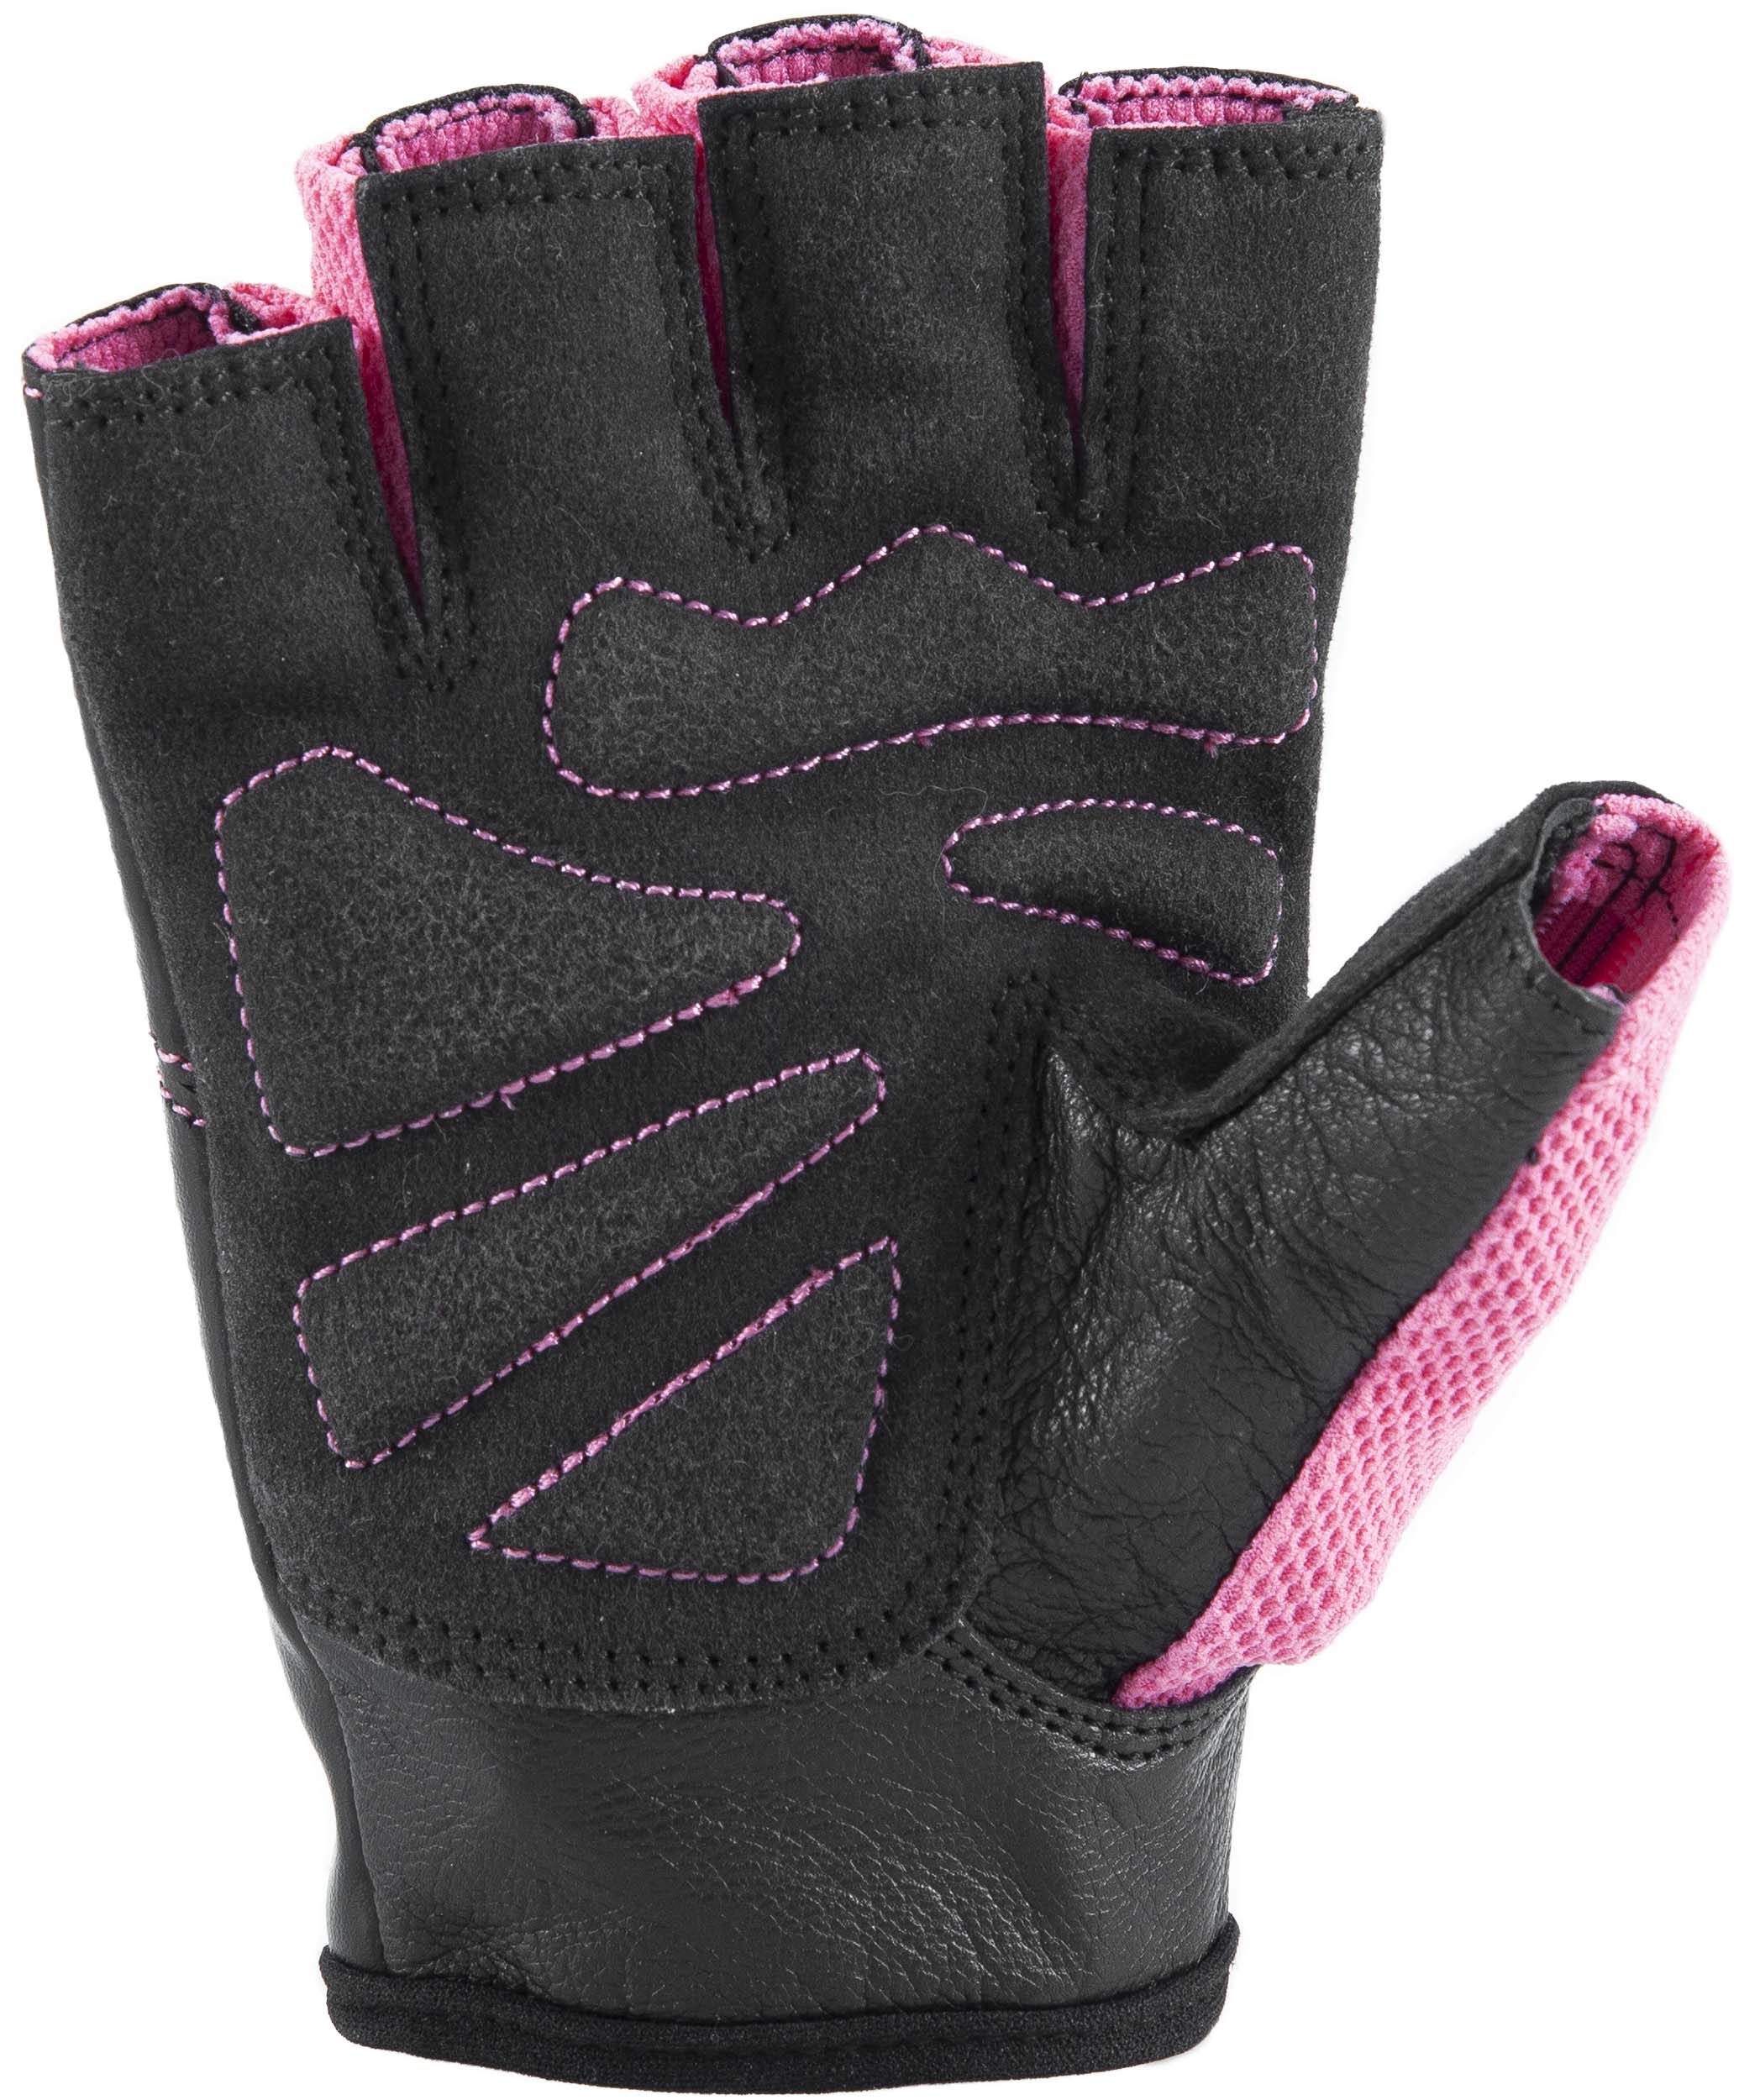 Γάντια Άρσης Βαρών AMILA Amara PU Ροζ/Μαύρο L